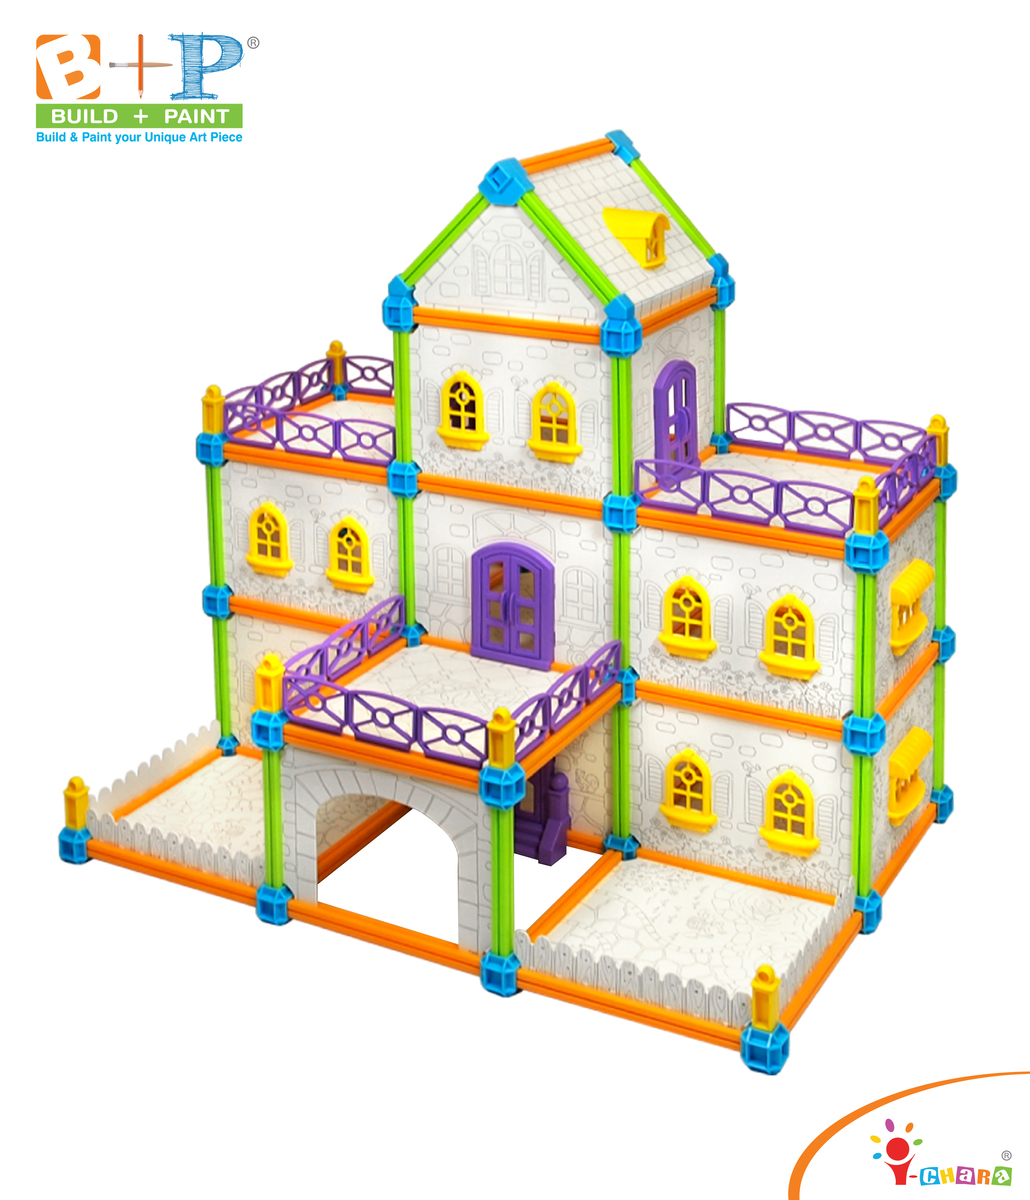 小小藝術建築師 - 莊園大宅 親子玩具 兒童益智玩具 幼兒教育玩具 建築模型 填色畫畫 STEAM STEM  科學教育玩具 